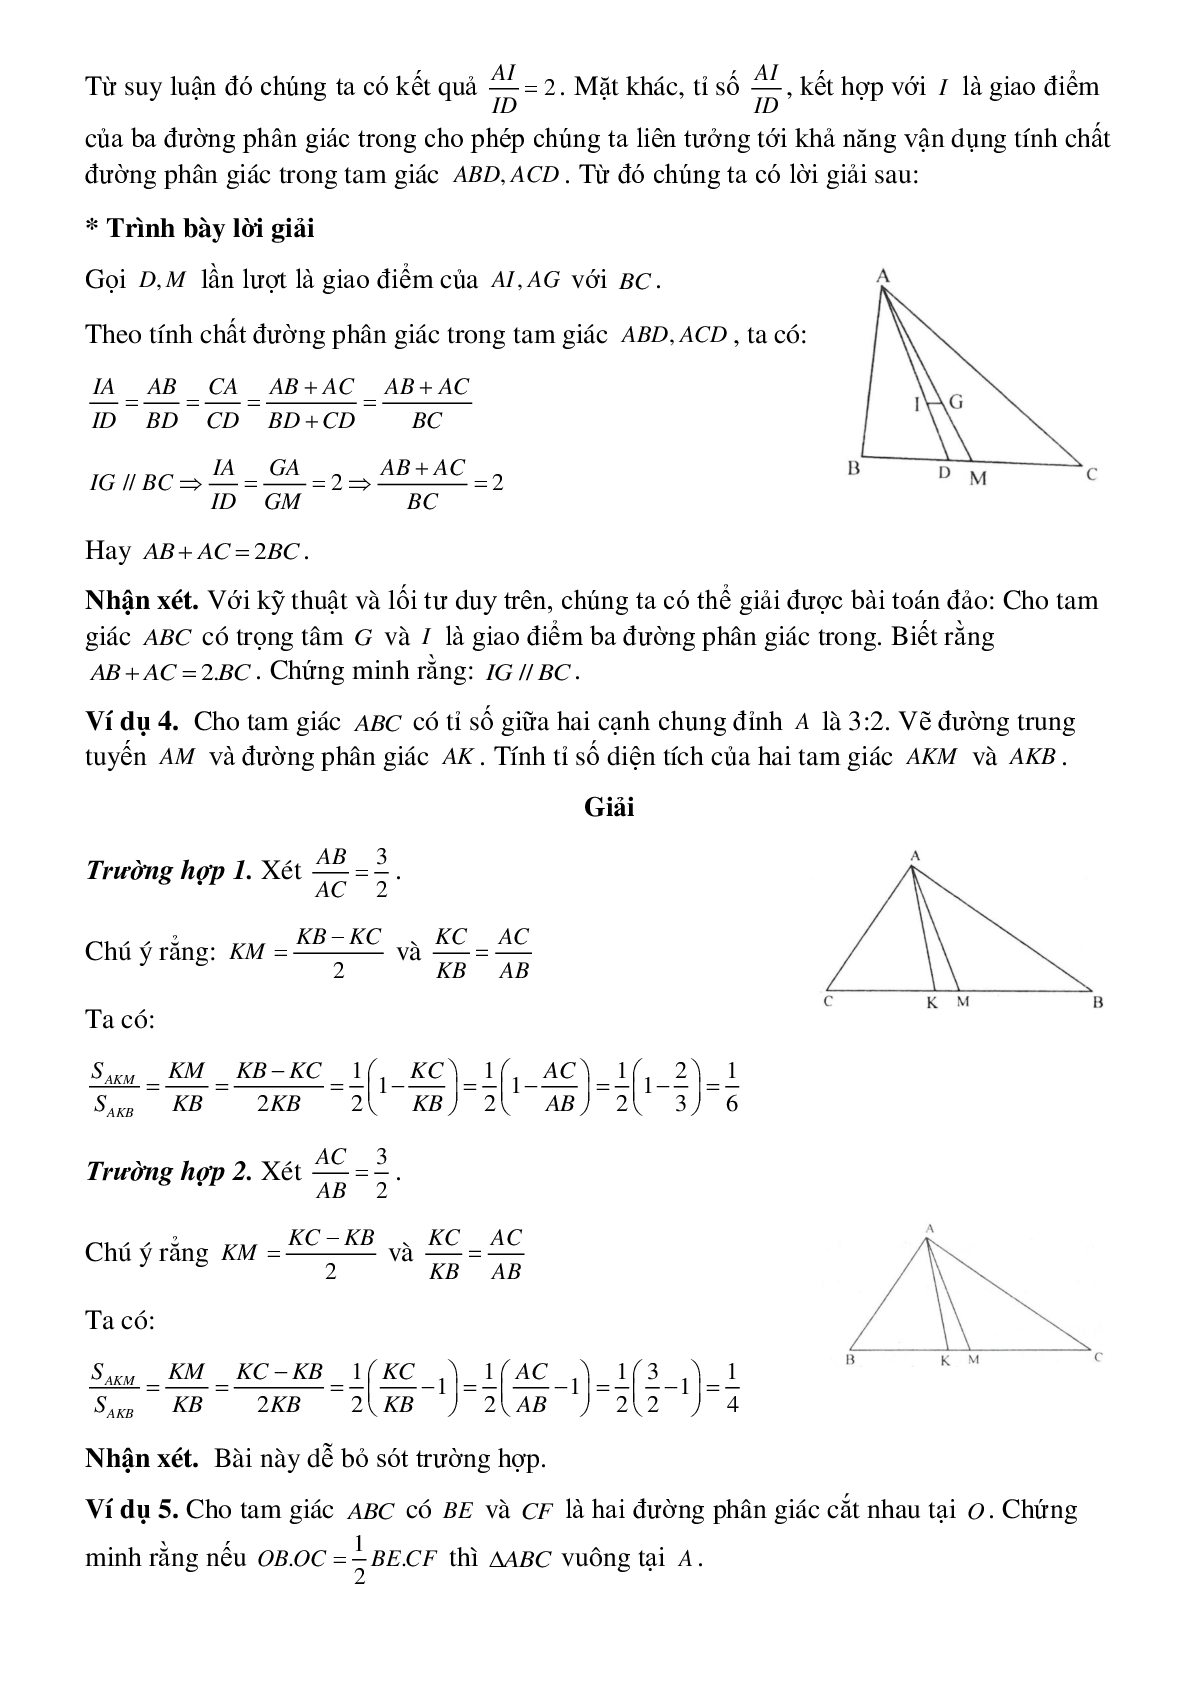 Tính chất đường phân giác của tam giác (trang 4)